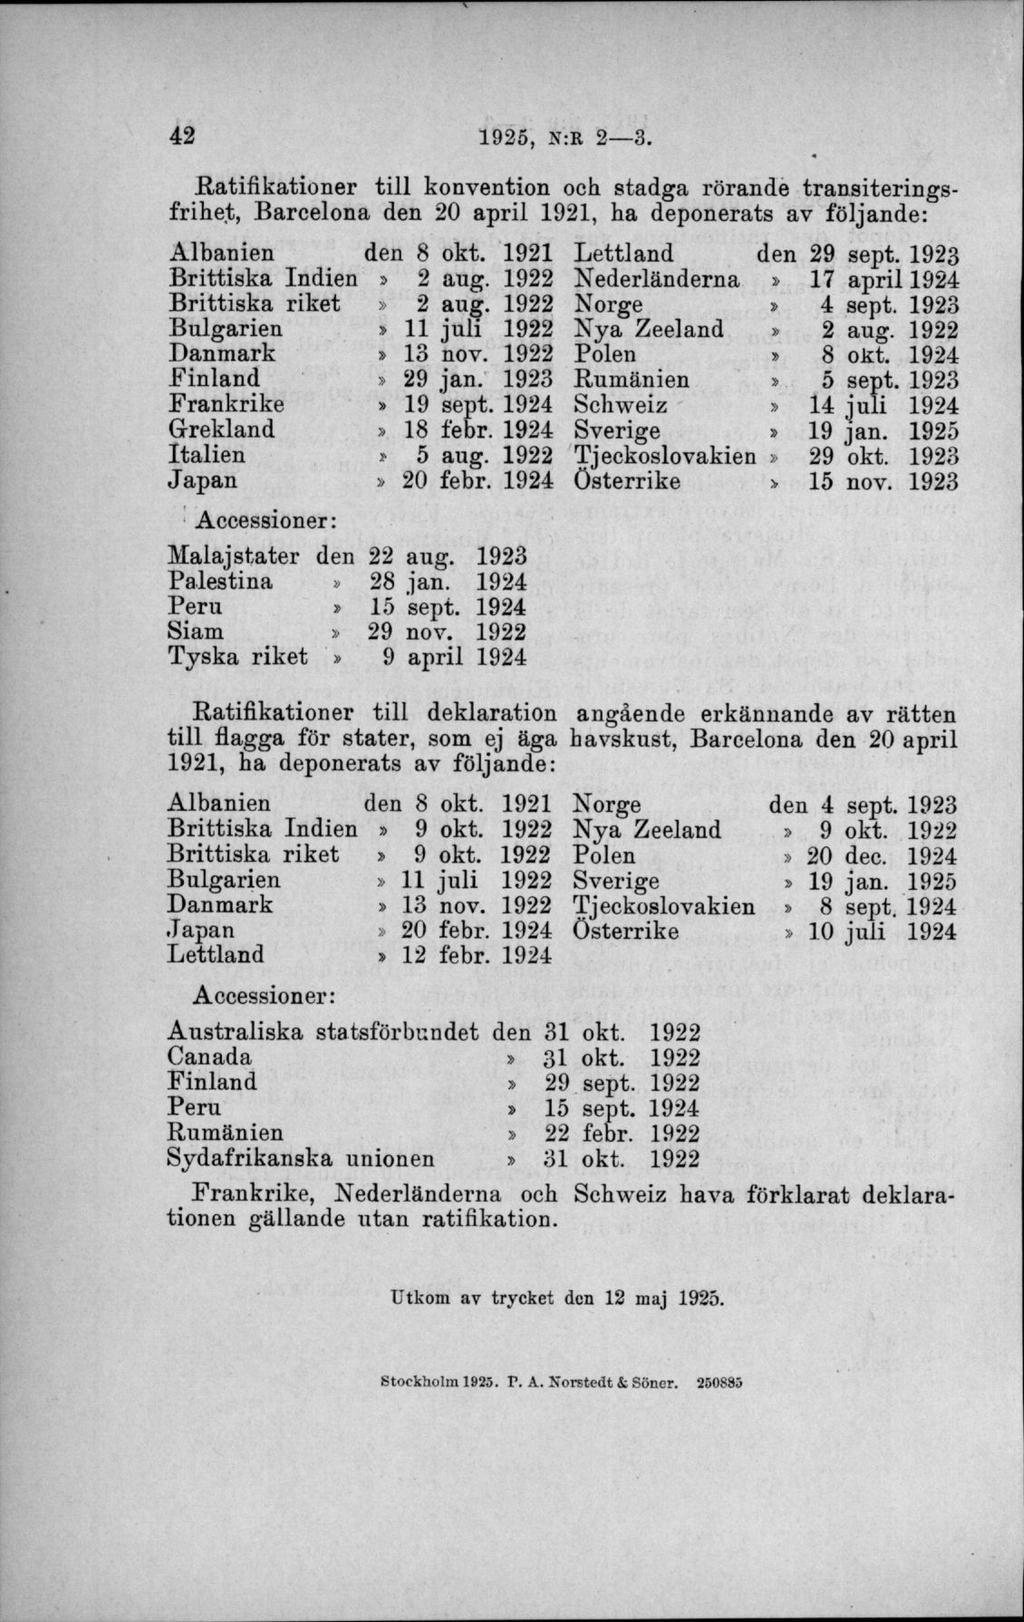 Ratifikationer till konvention och stadga rörande transiteringsfrihet, Barcelona den 20 april 1921, ha deponerats av följande: Albanien Brittiska Indien Brittiska riket Bulgarien Danmark Finland